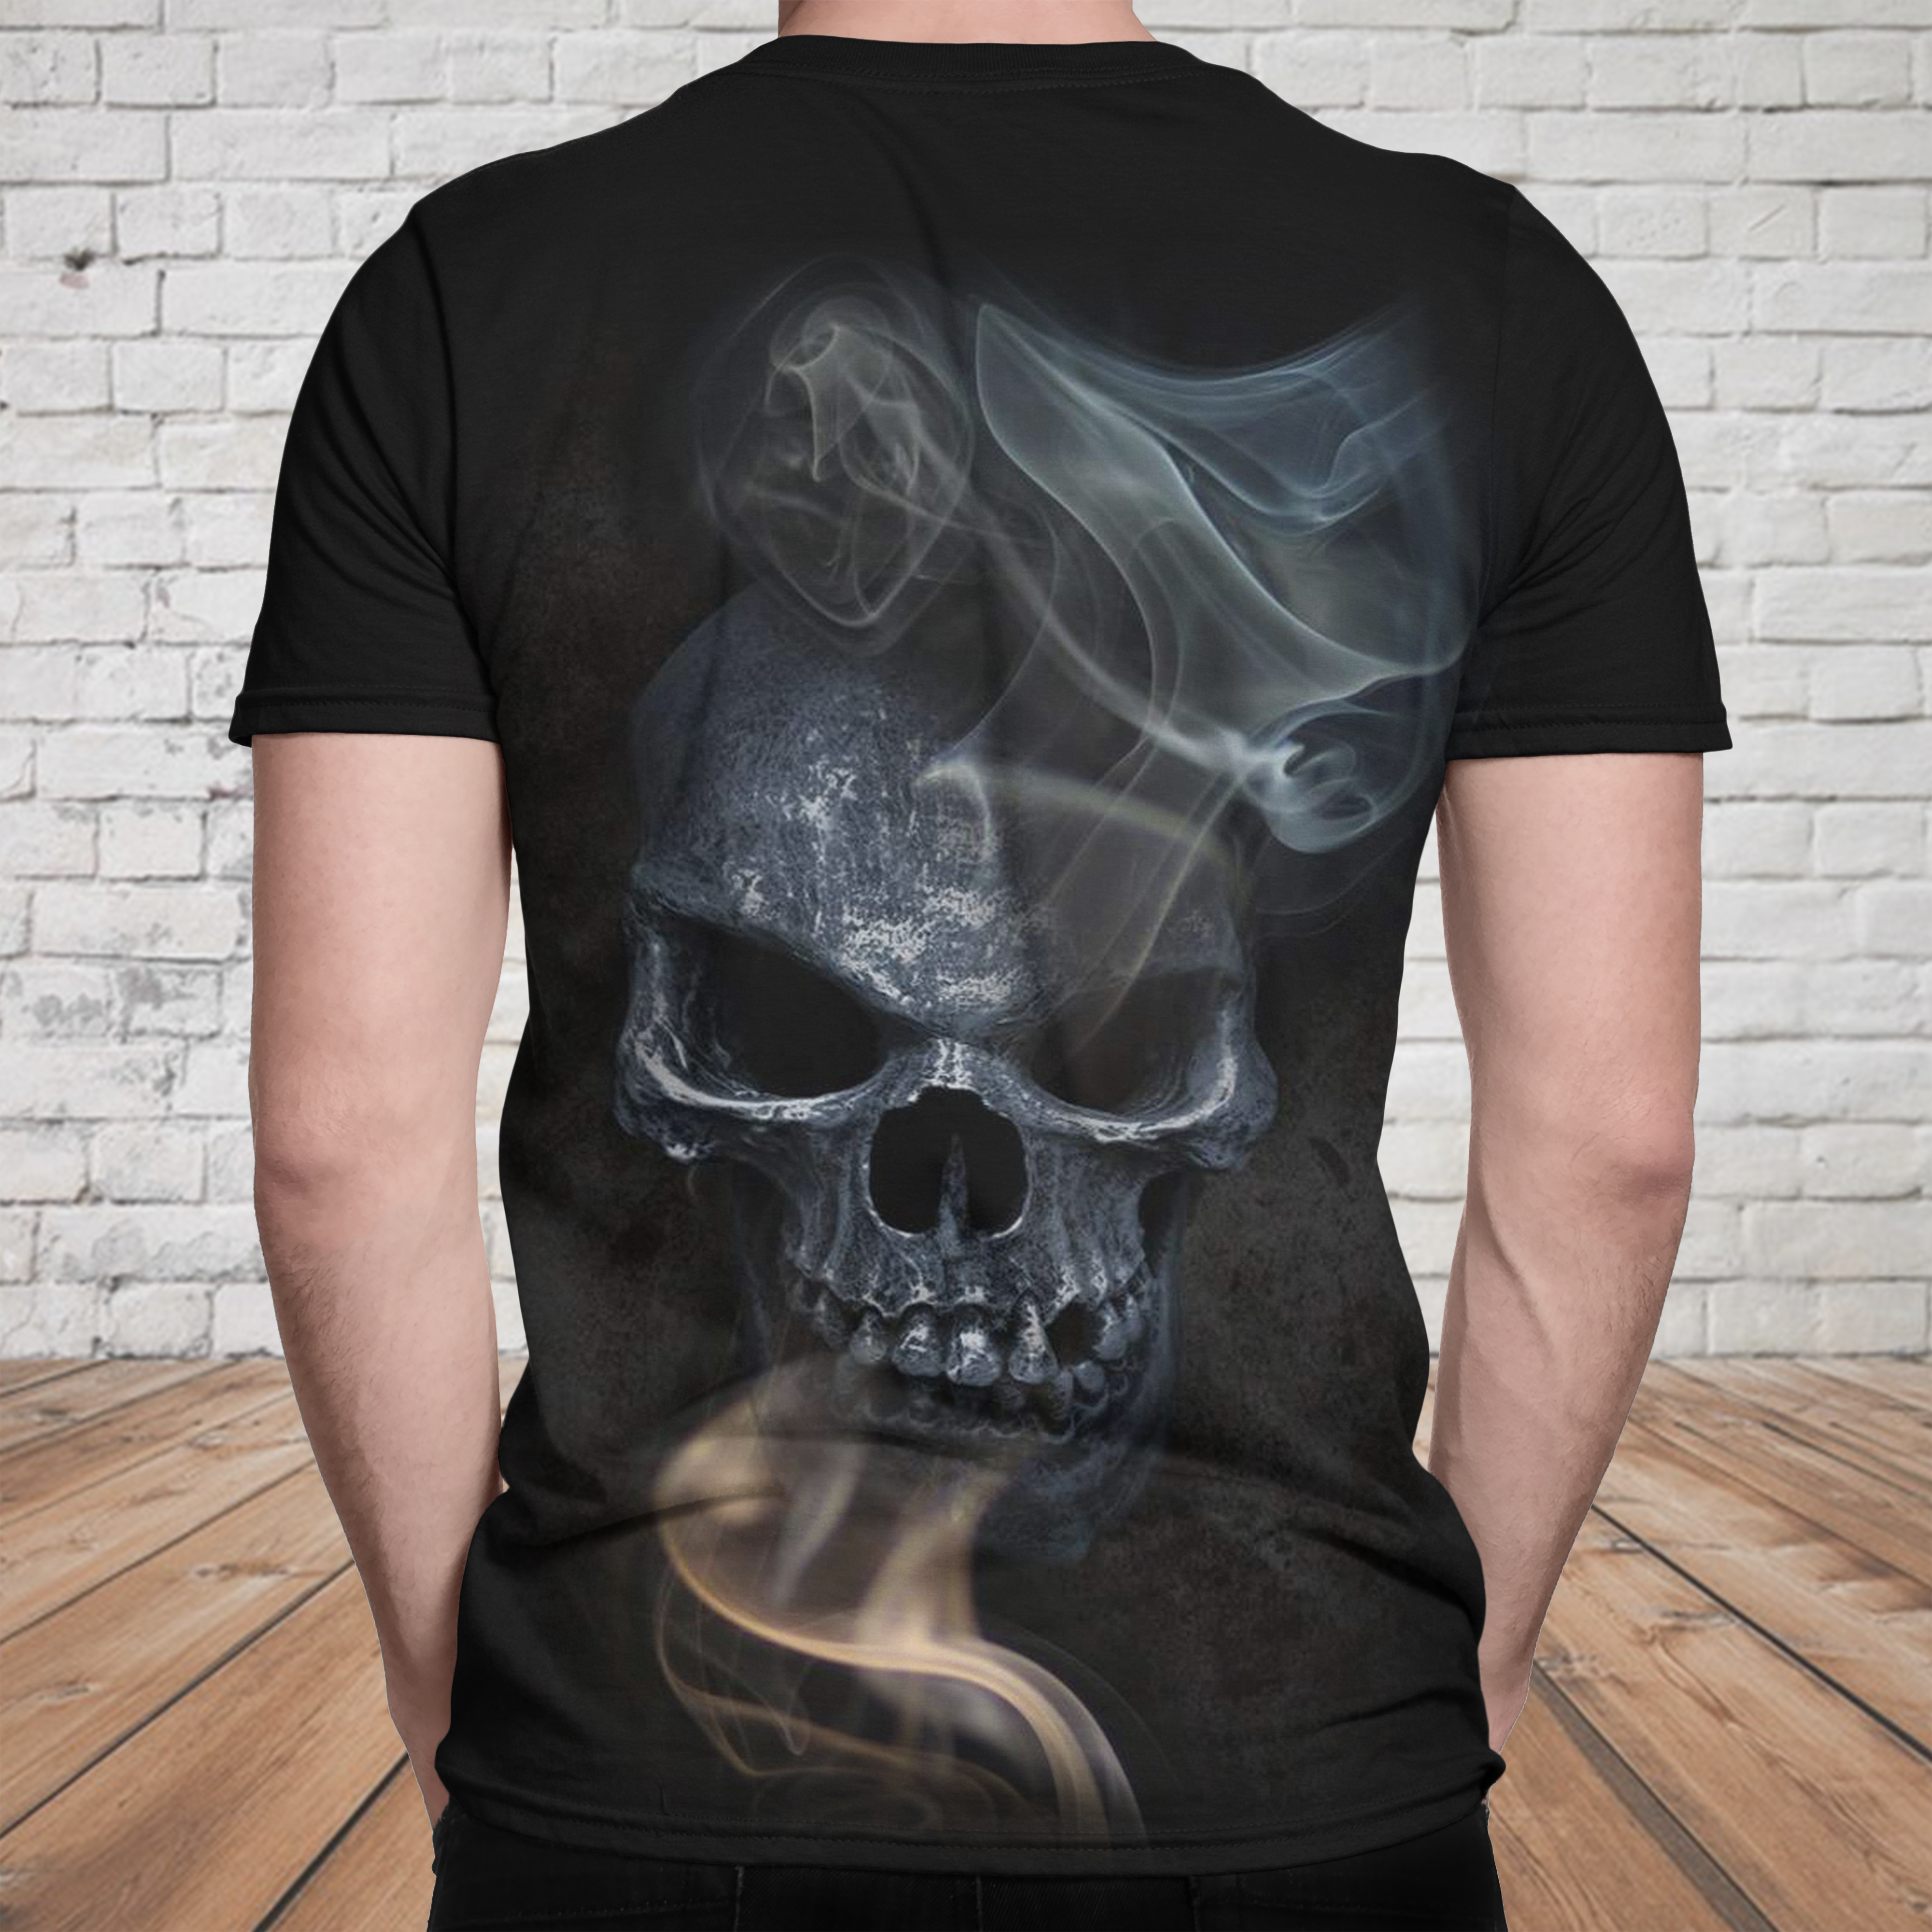 Skull 3D T-shirt - 02443